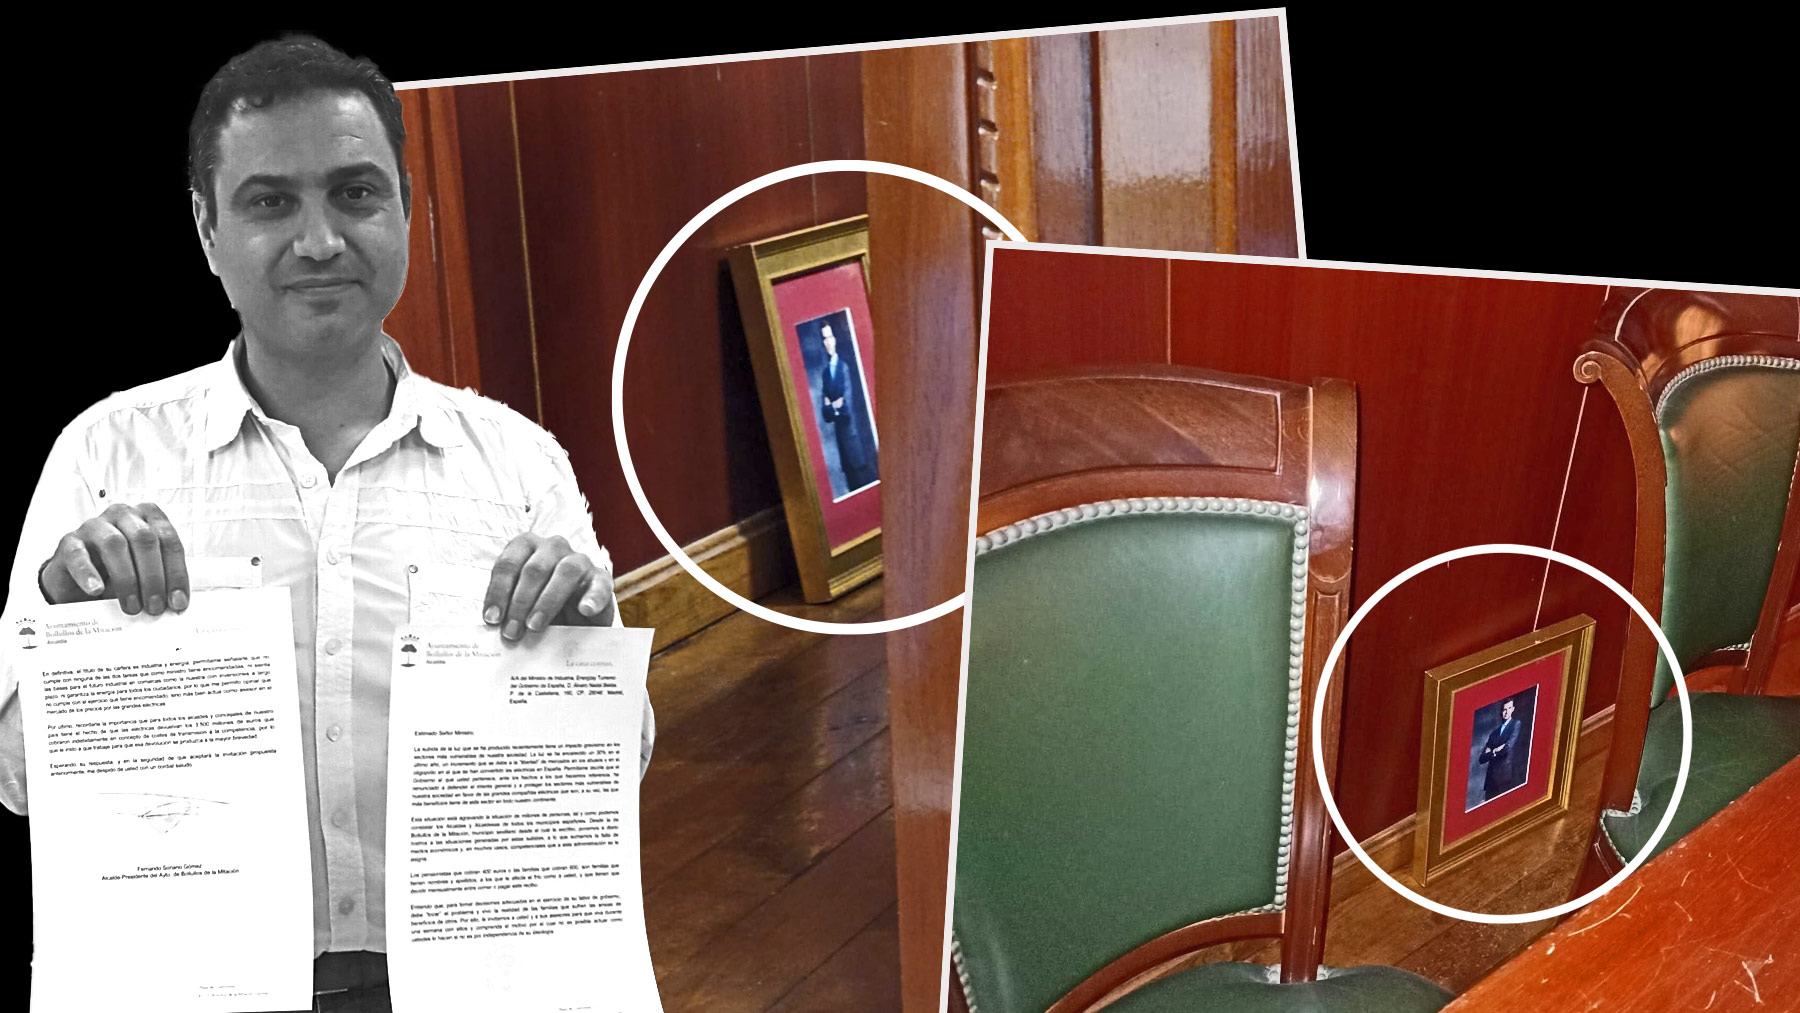 El alcalde comunista de Bolullos, Fernando Soriano, y el cuadro del Rey en el suelo (PP Bolullos).